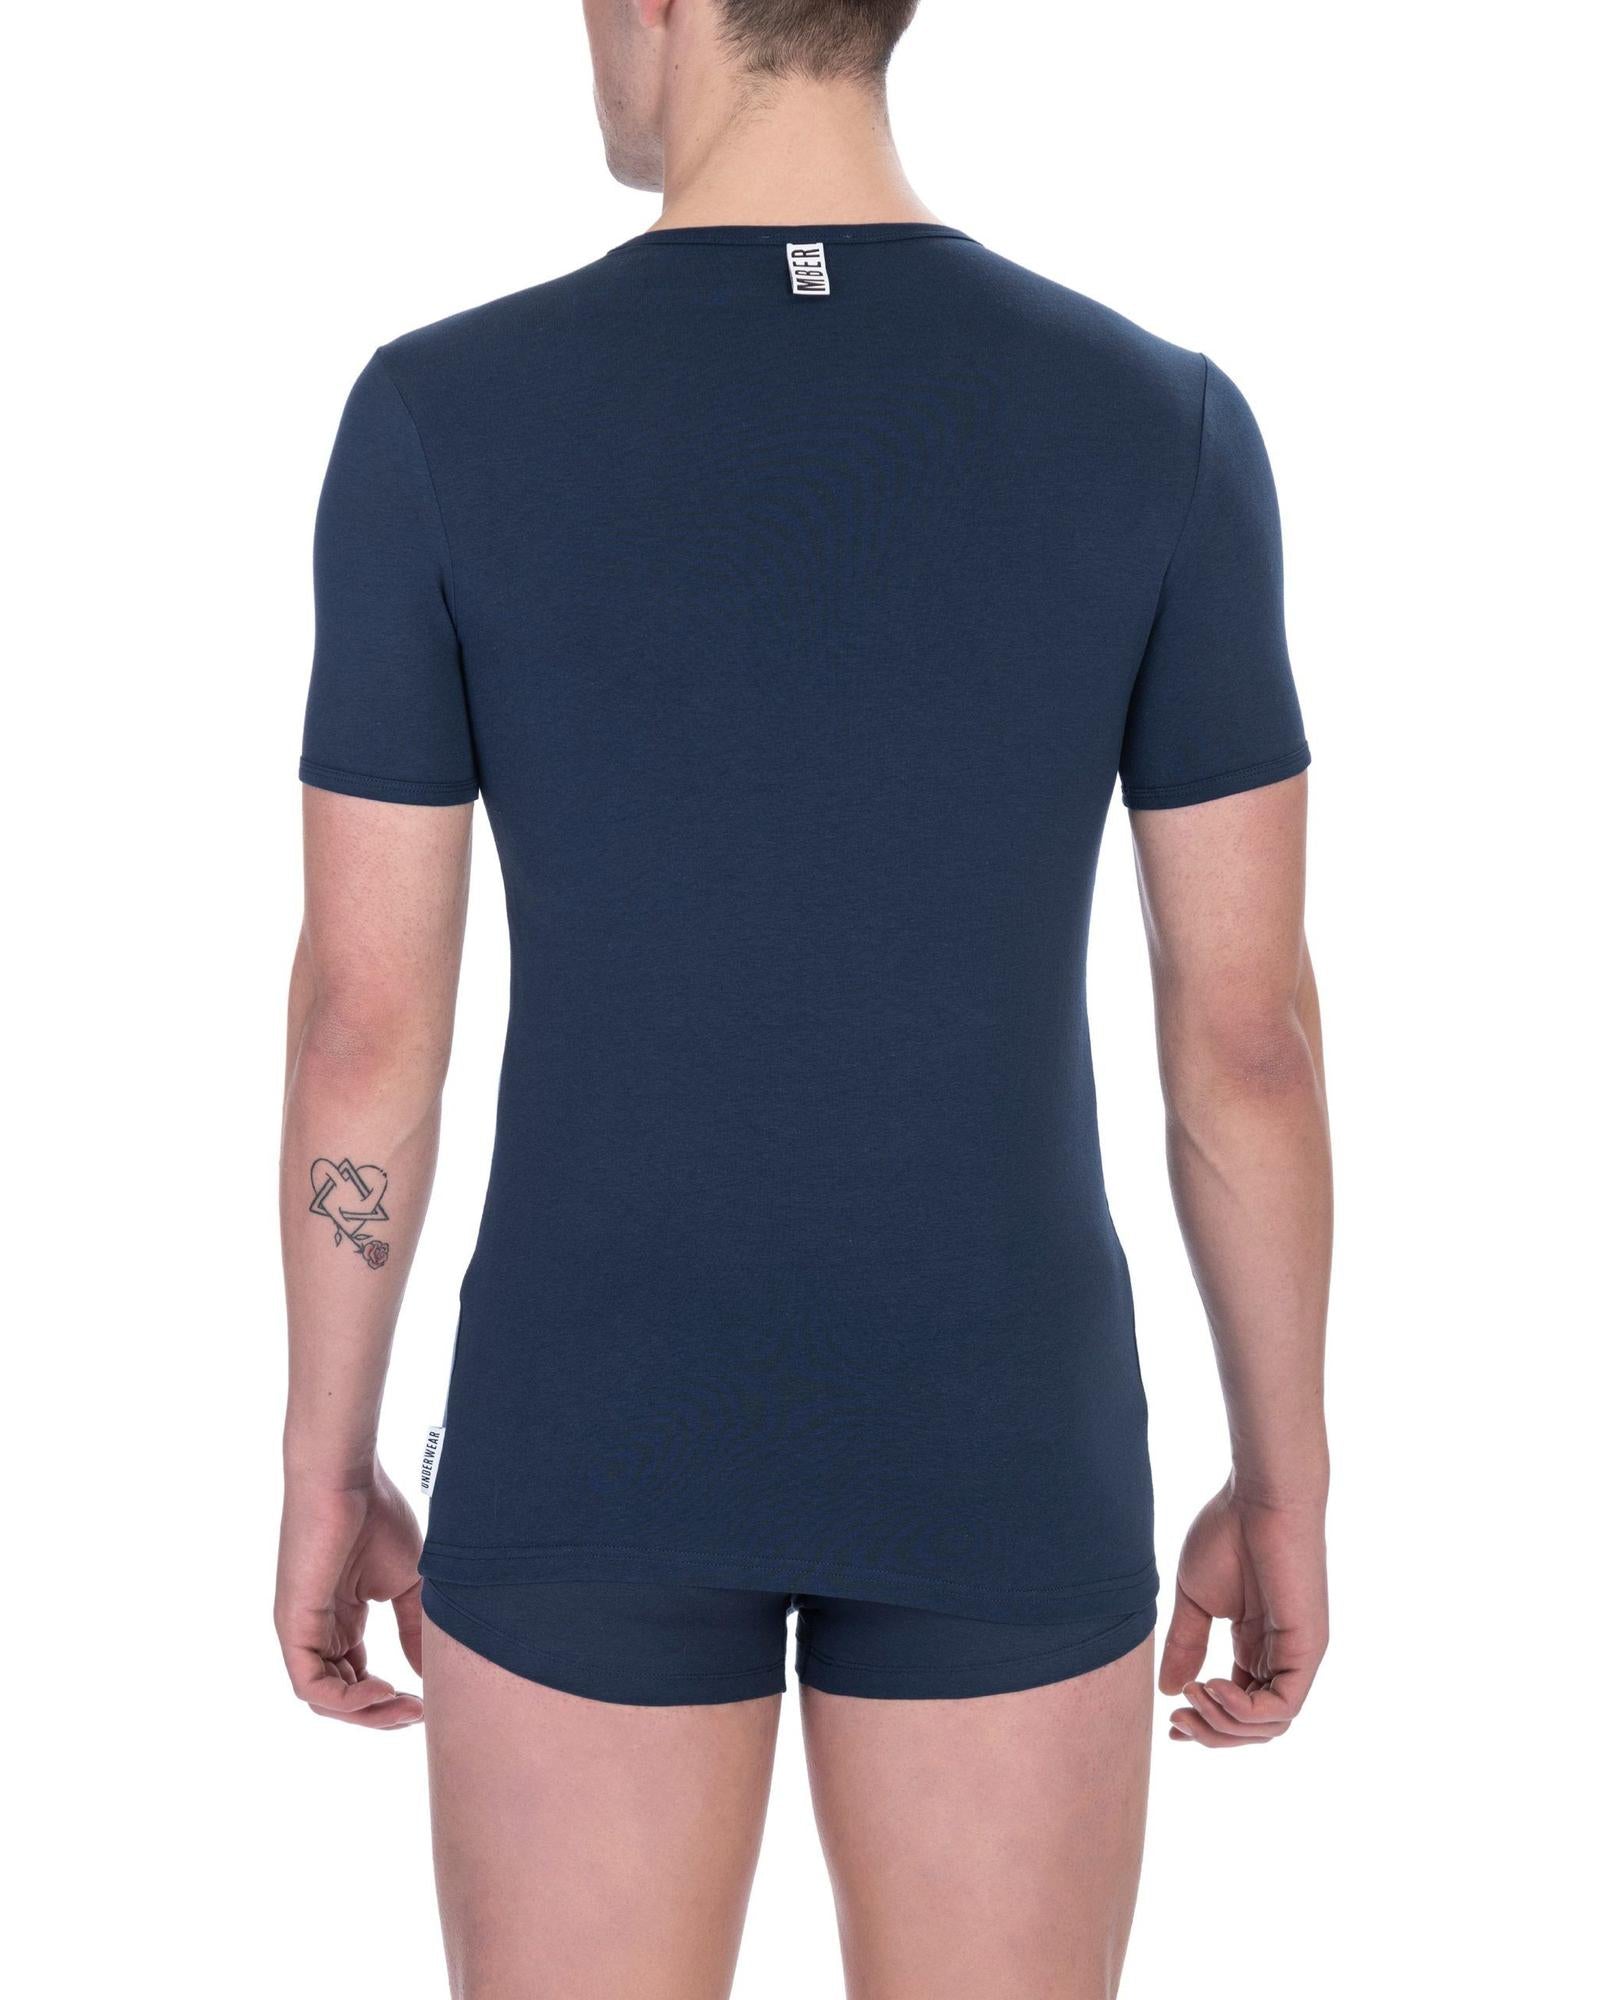 Men's Blue Cotton T-Shirt - XL